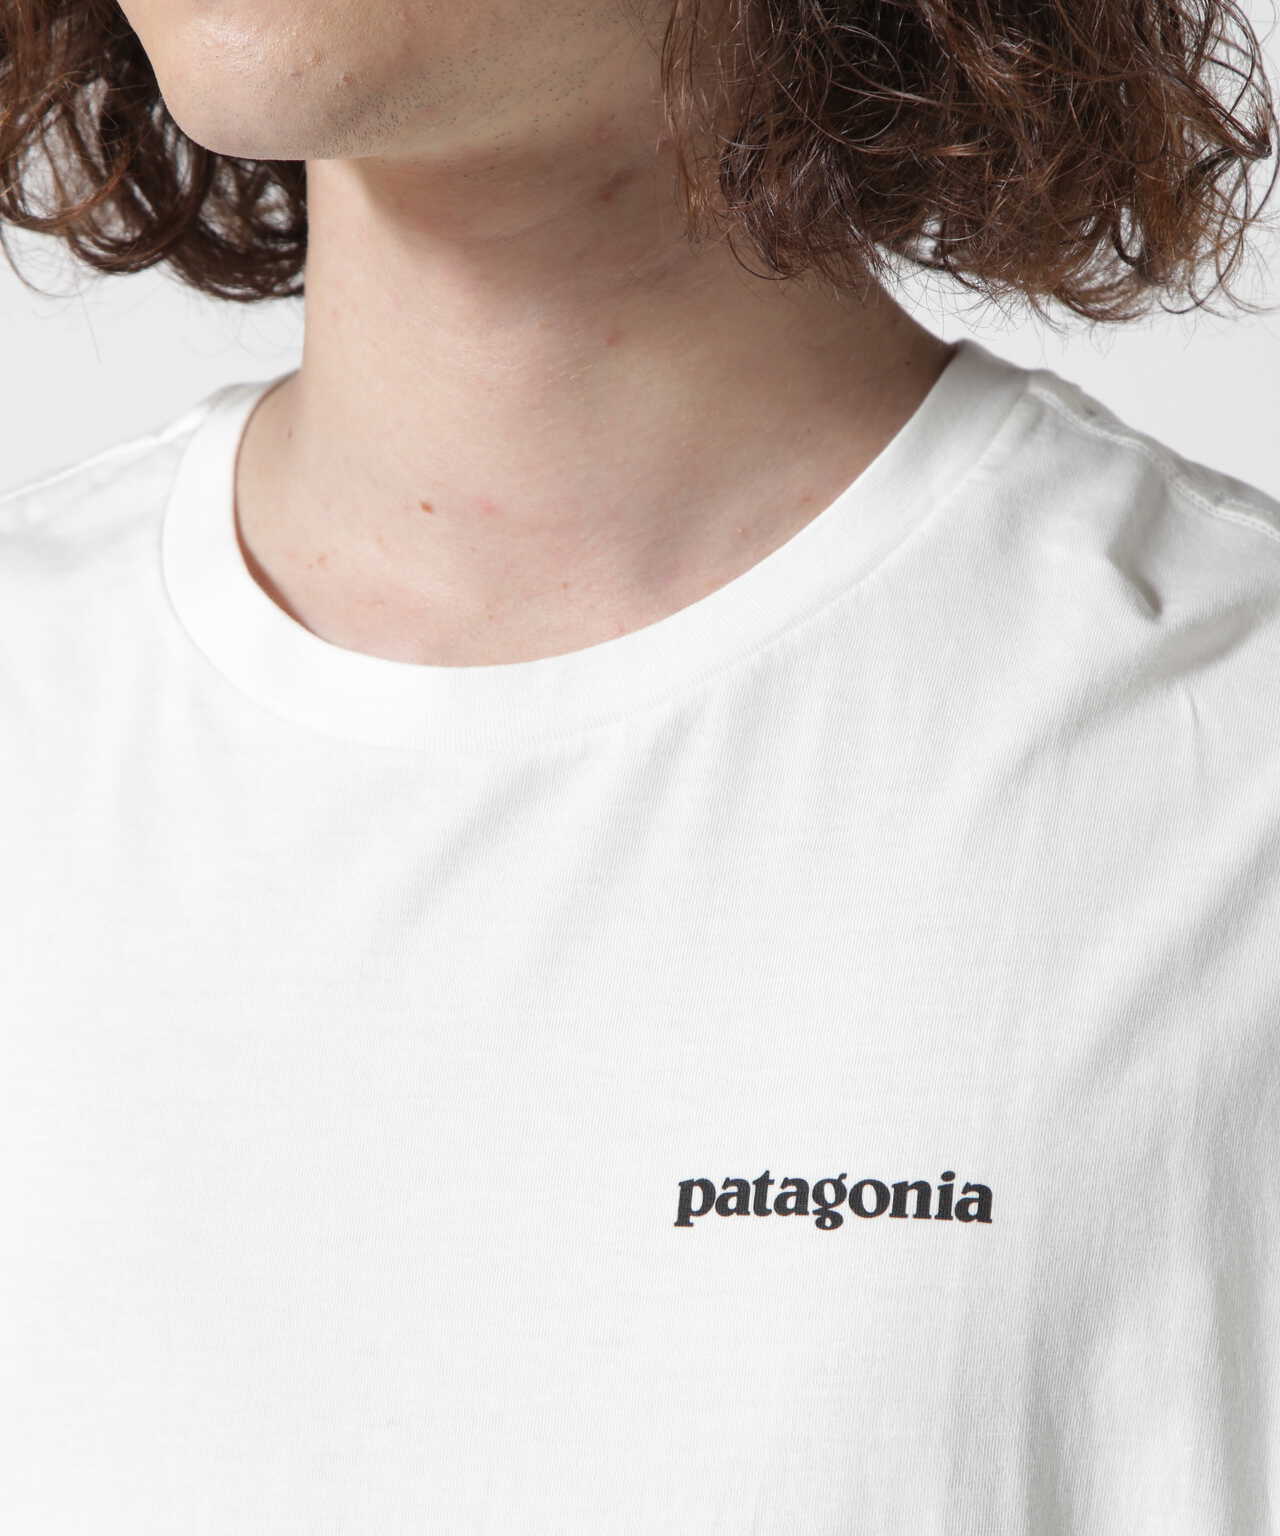 patagonia Tシャツ P-6 P-6 LOGO ホワイト L パタゴニア